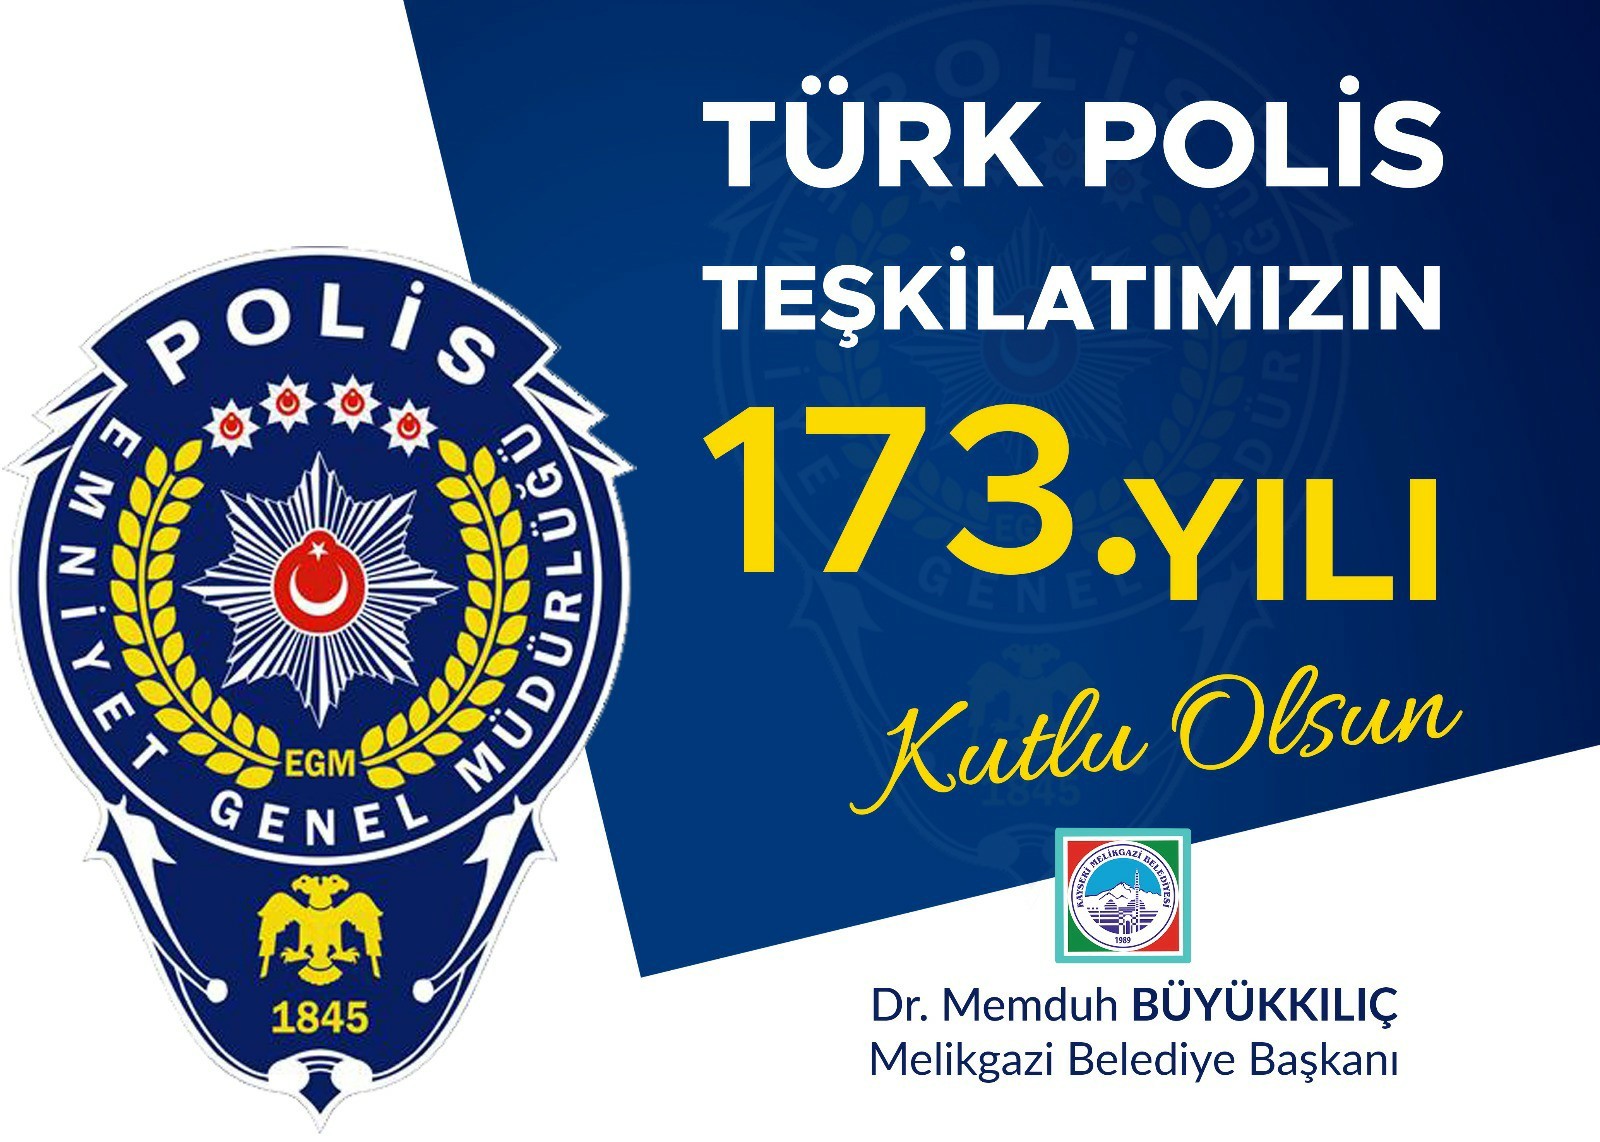 Büyükkılıç’tan Türk Polis Teşkilatı’nın kuruluş yıl dönümü mesajı